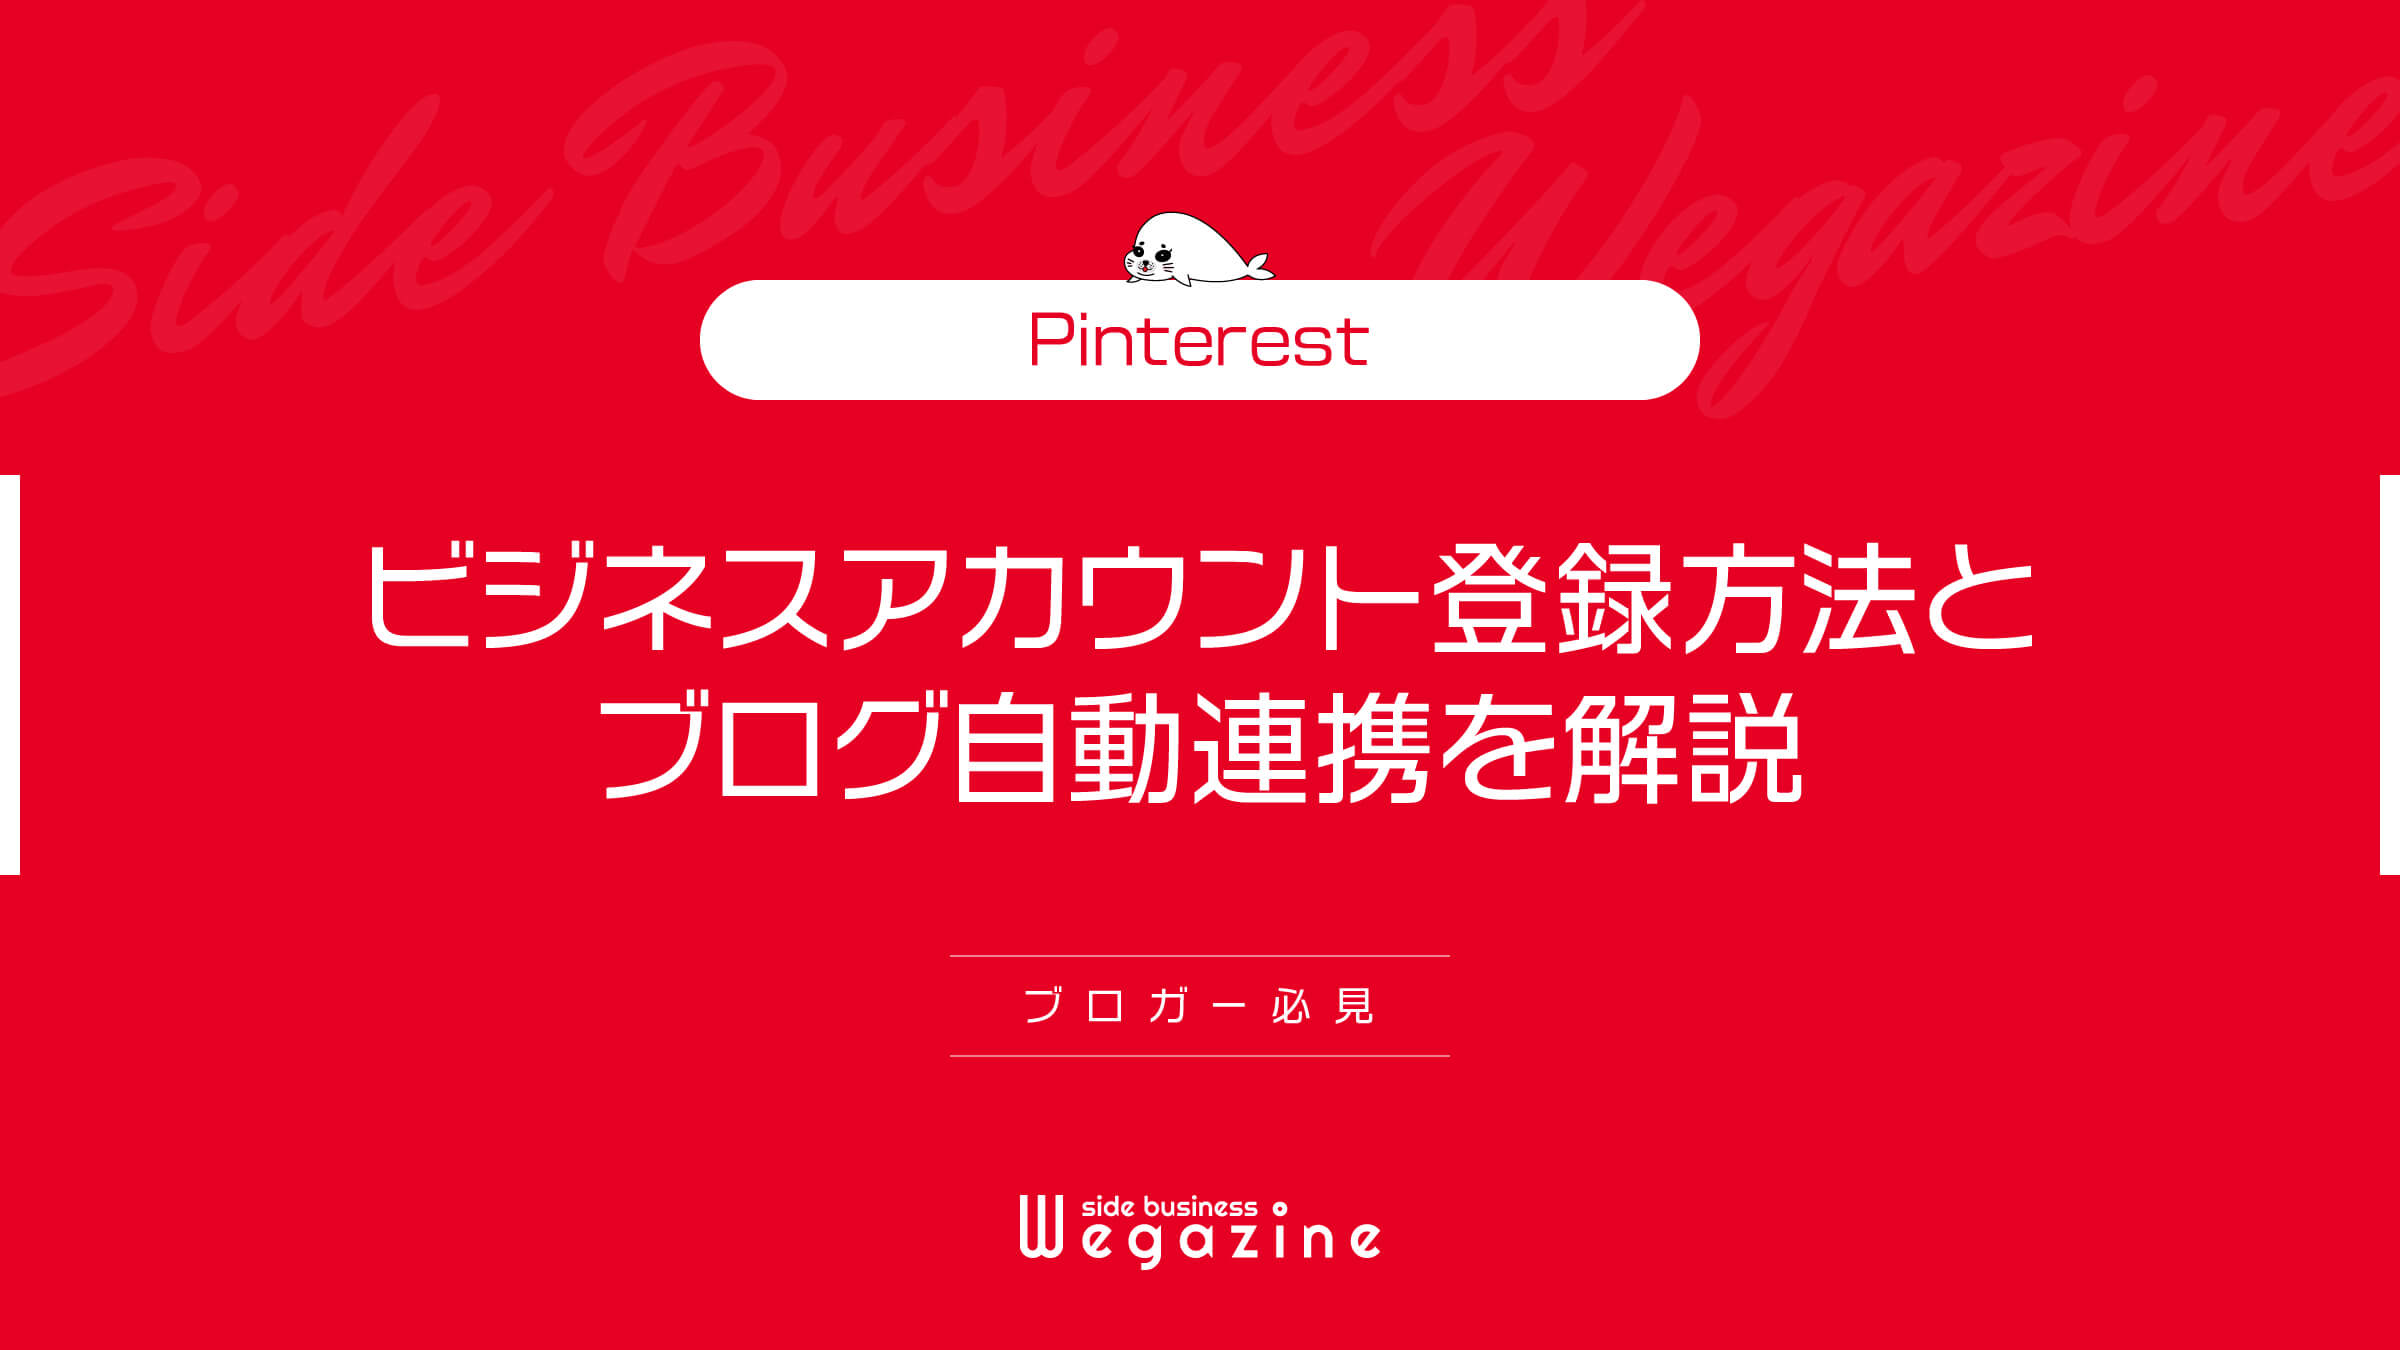 【Pinterest】ビジネスアカウント登録方法とブログ自動連携を解説(ブロガー必見)